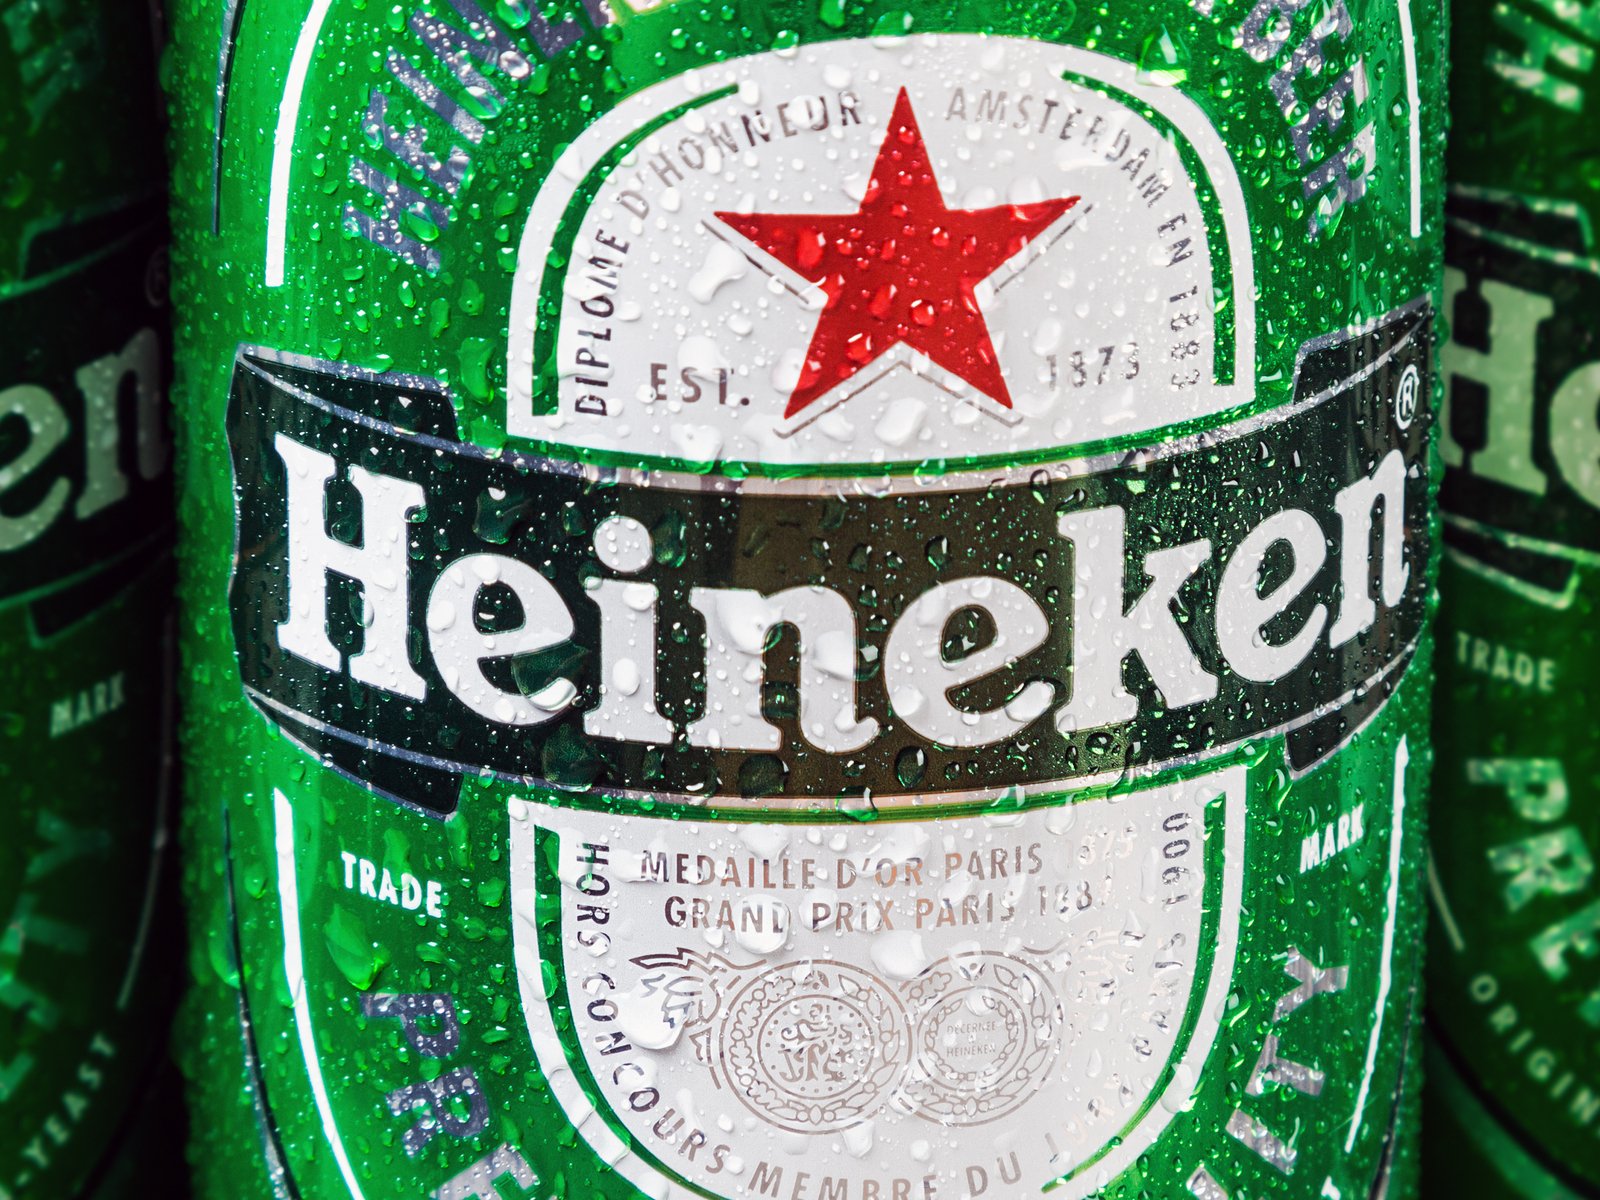 Heineken sells off Russian beer business for €1